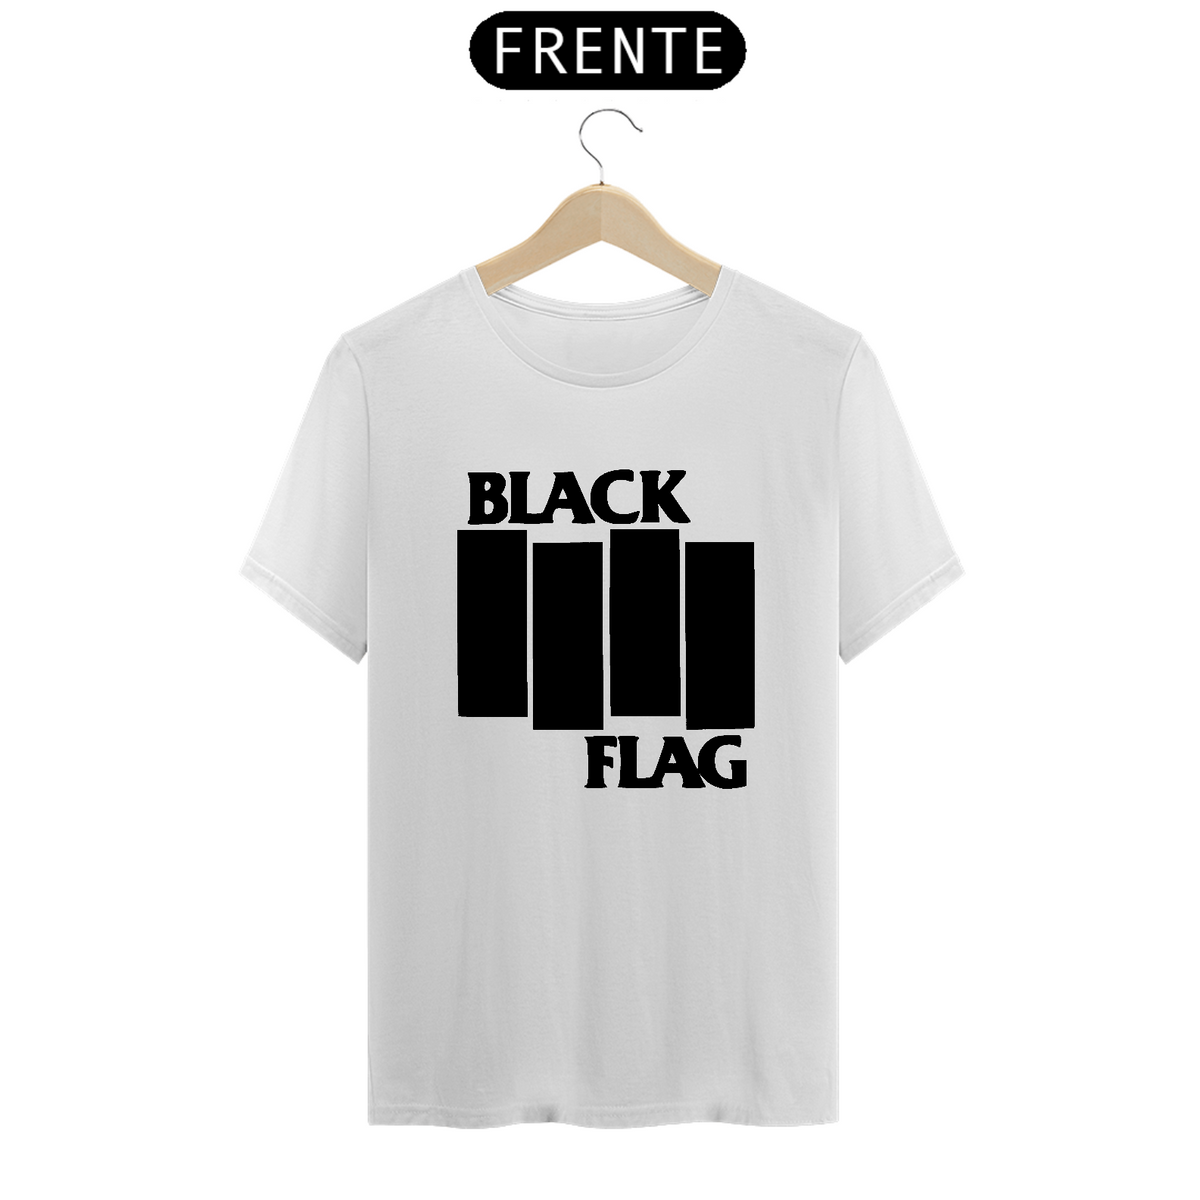 Nome do produto: Black Flag